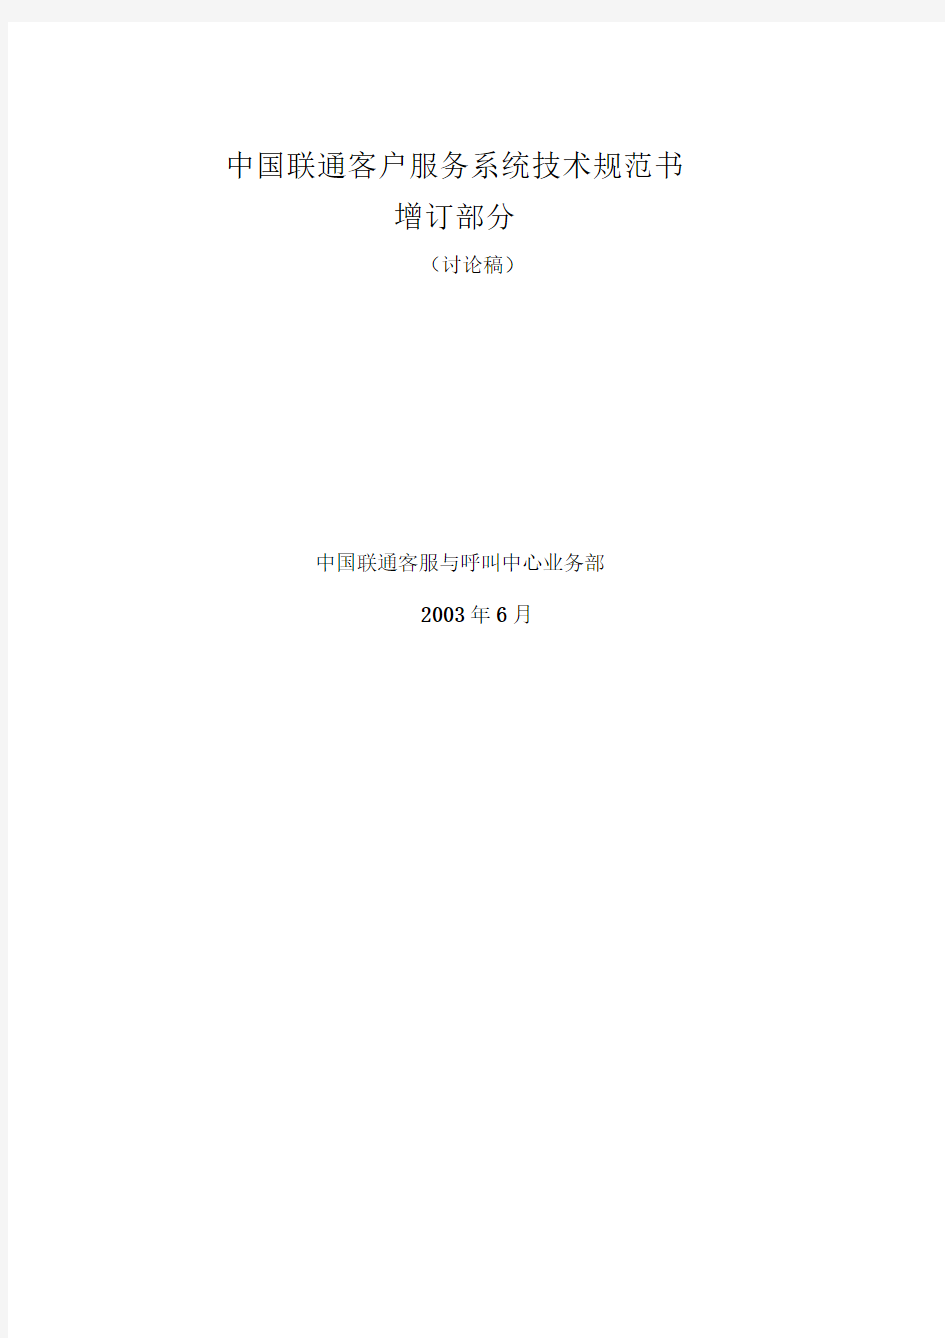 中国联通客户服务系统技术规范书(增补部分)